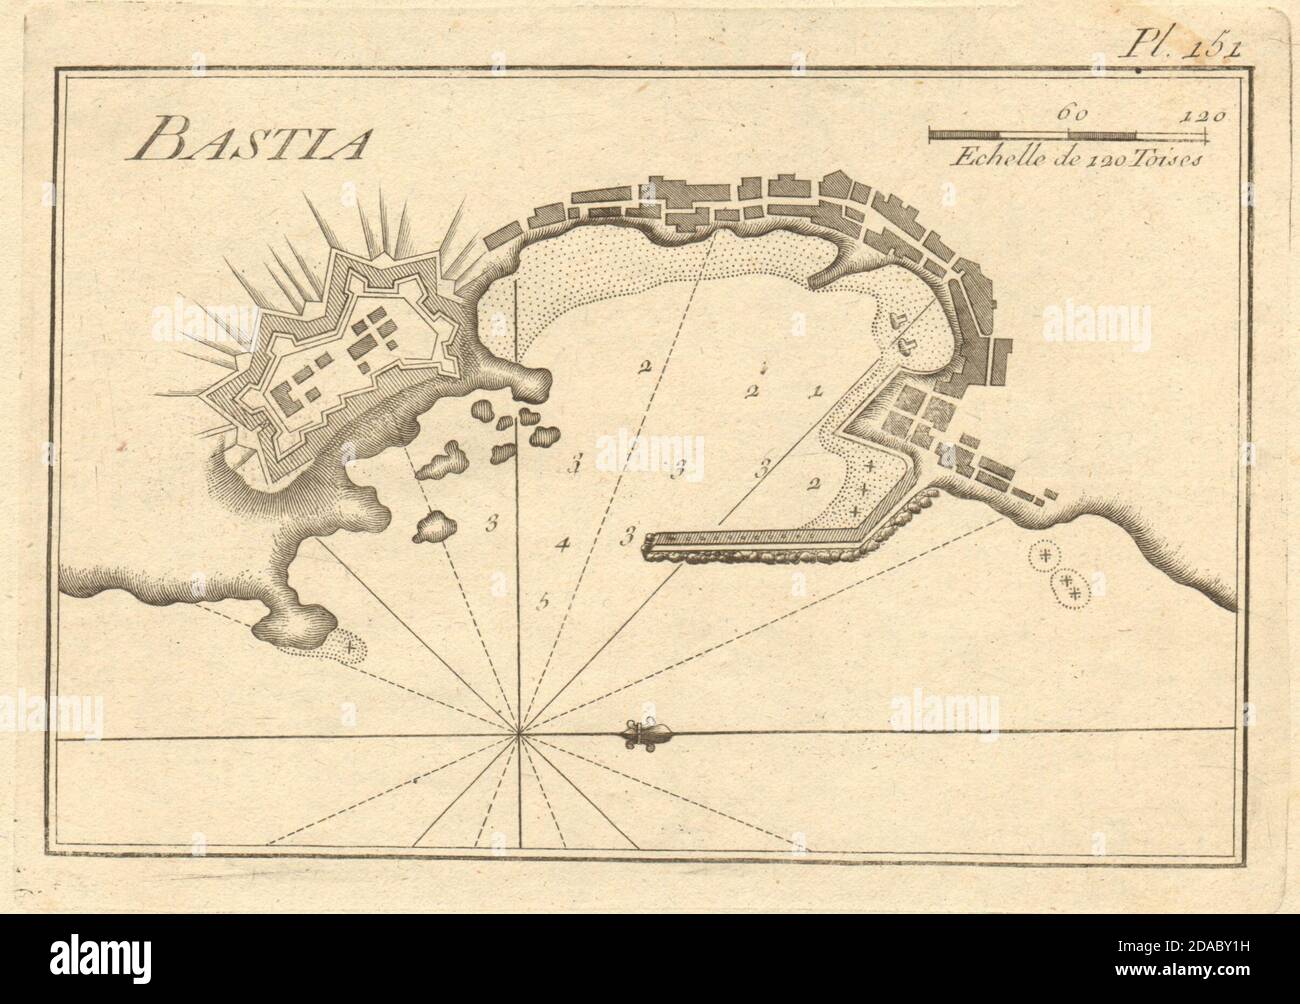 Pianta del porto di Bastia. Corsica, Francia. ROUX 1804 vecchia mappa antica Foto Stock